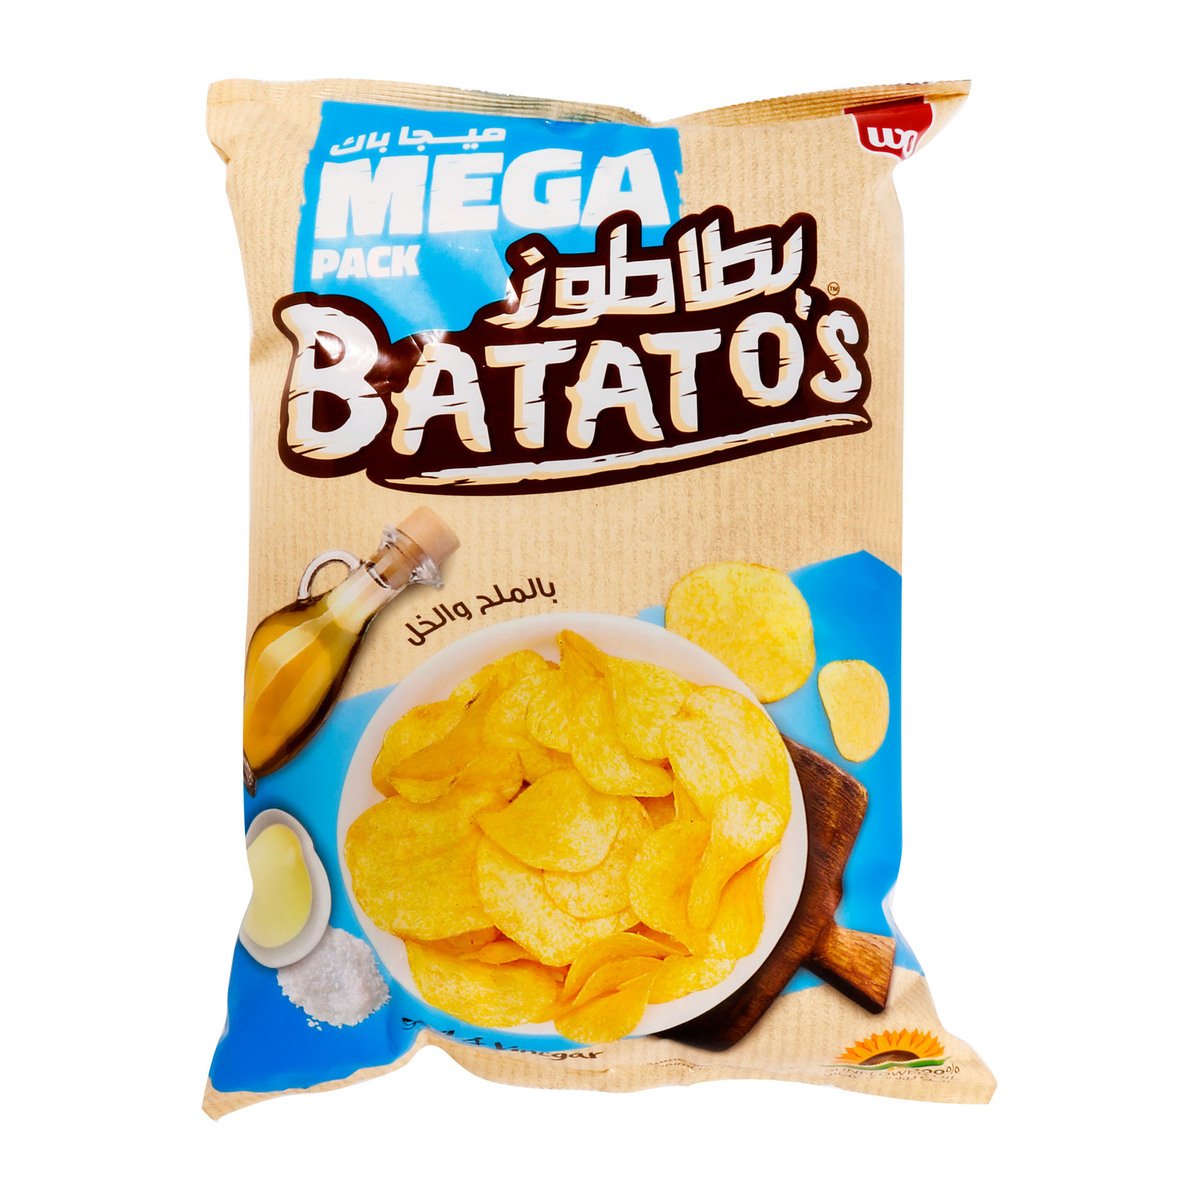 Batato's Salt & Vinegar Chips 167g